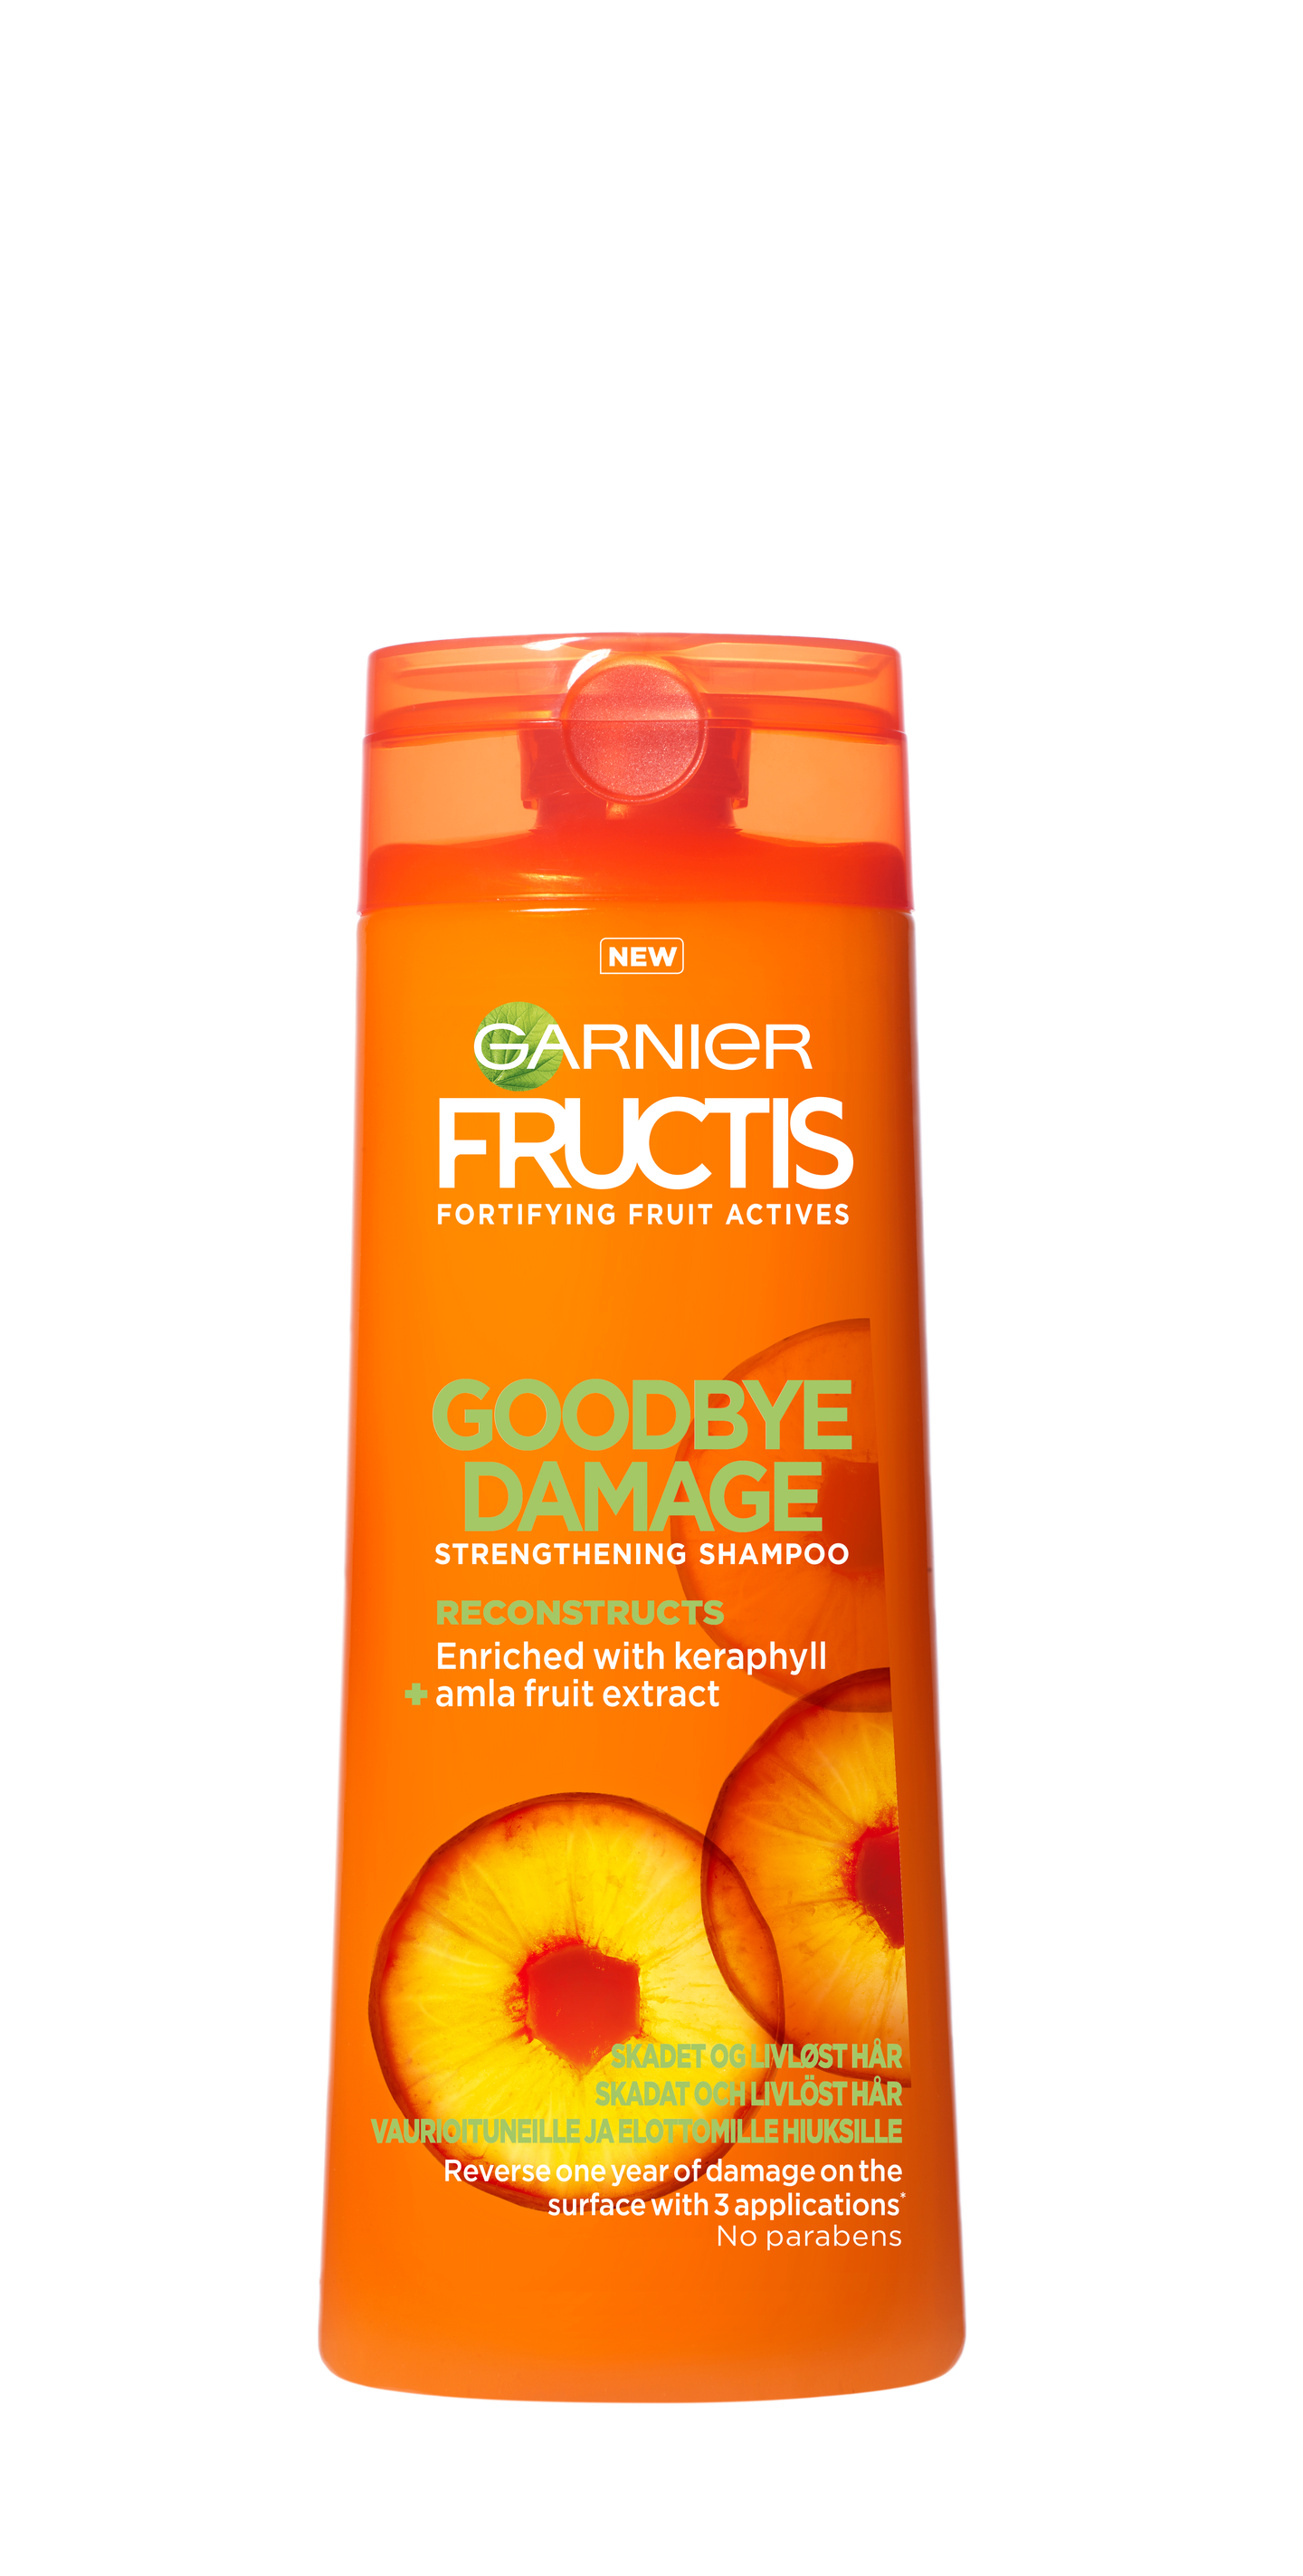 Garnier Fructis shampoo 250ml Goodbye Damage vaurioituneille ja elottomille hiuksille